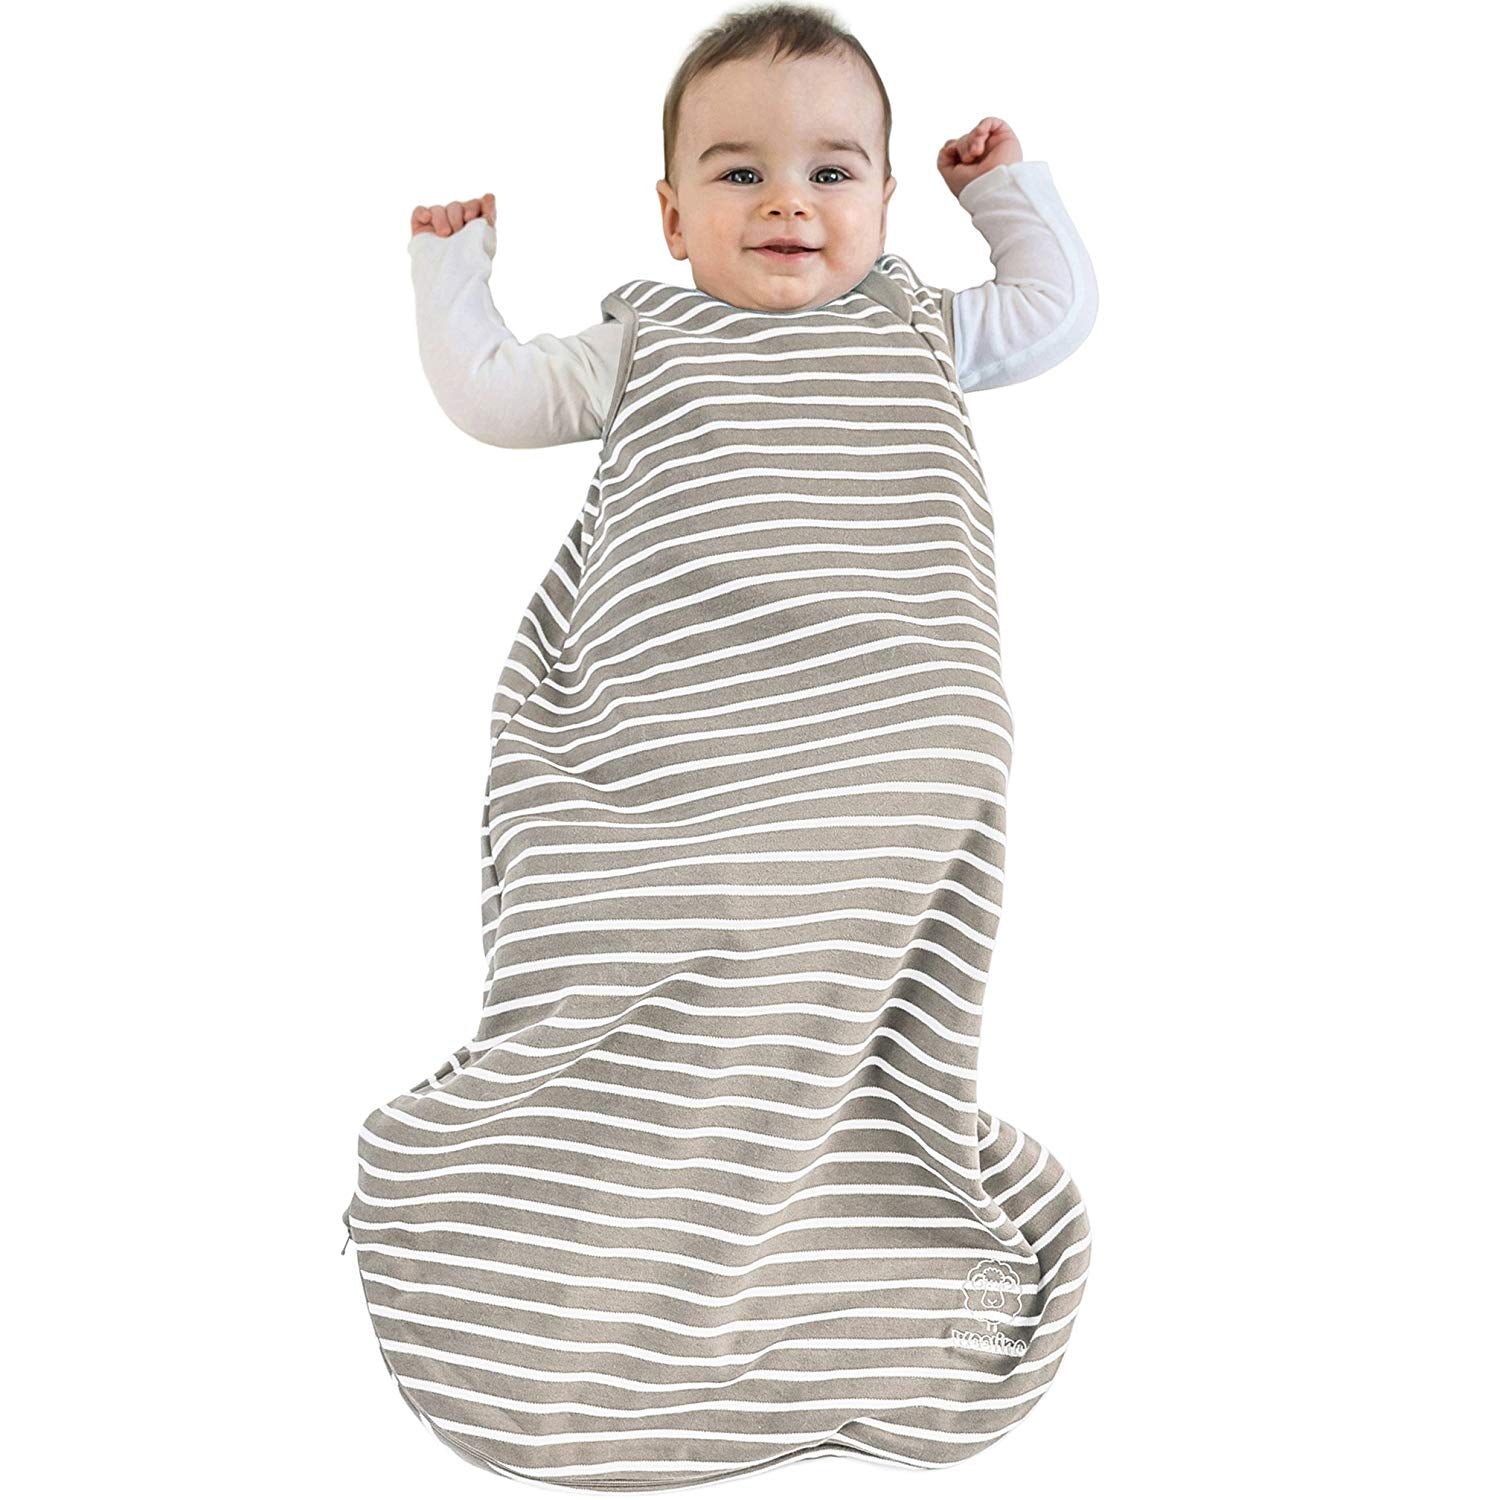 Woolino 4 Season BASIC Merino Wool Baby Sleep Bag in Birch Gray